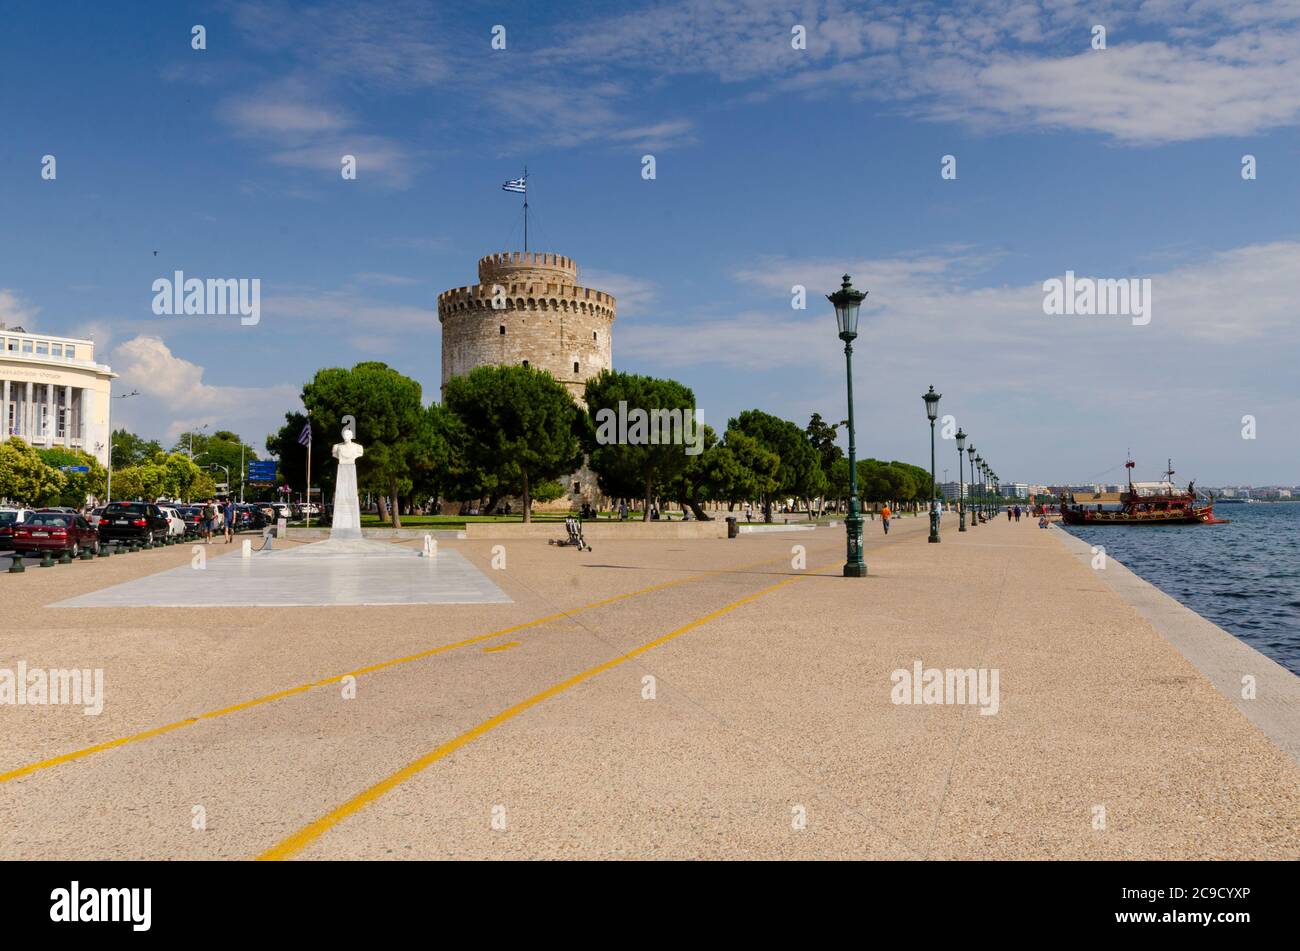 Vue générale de la célèbre Tour Blanche de Thessalonique Macédoine Grèce. Ce monument était autrefois une forteresse ottomane et une prison Banque D'Images